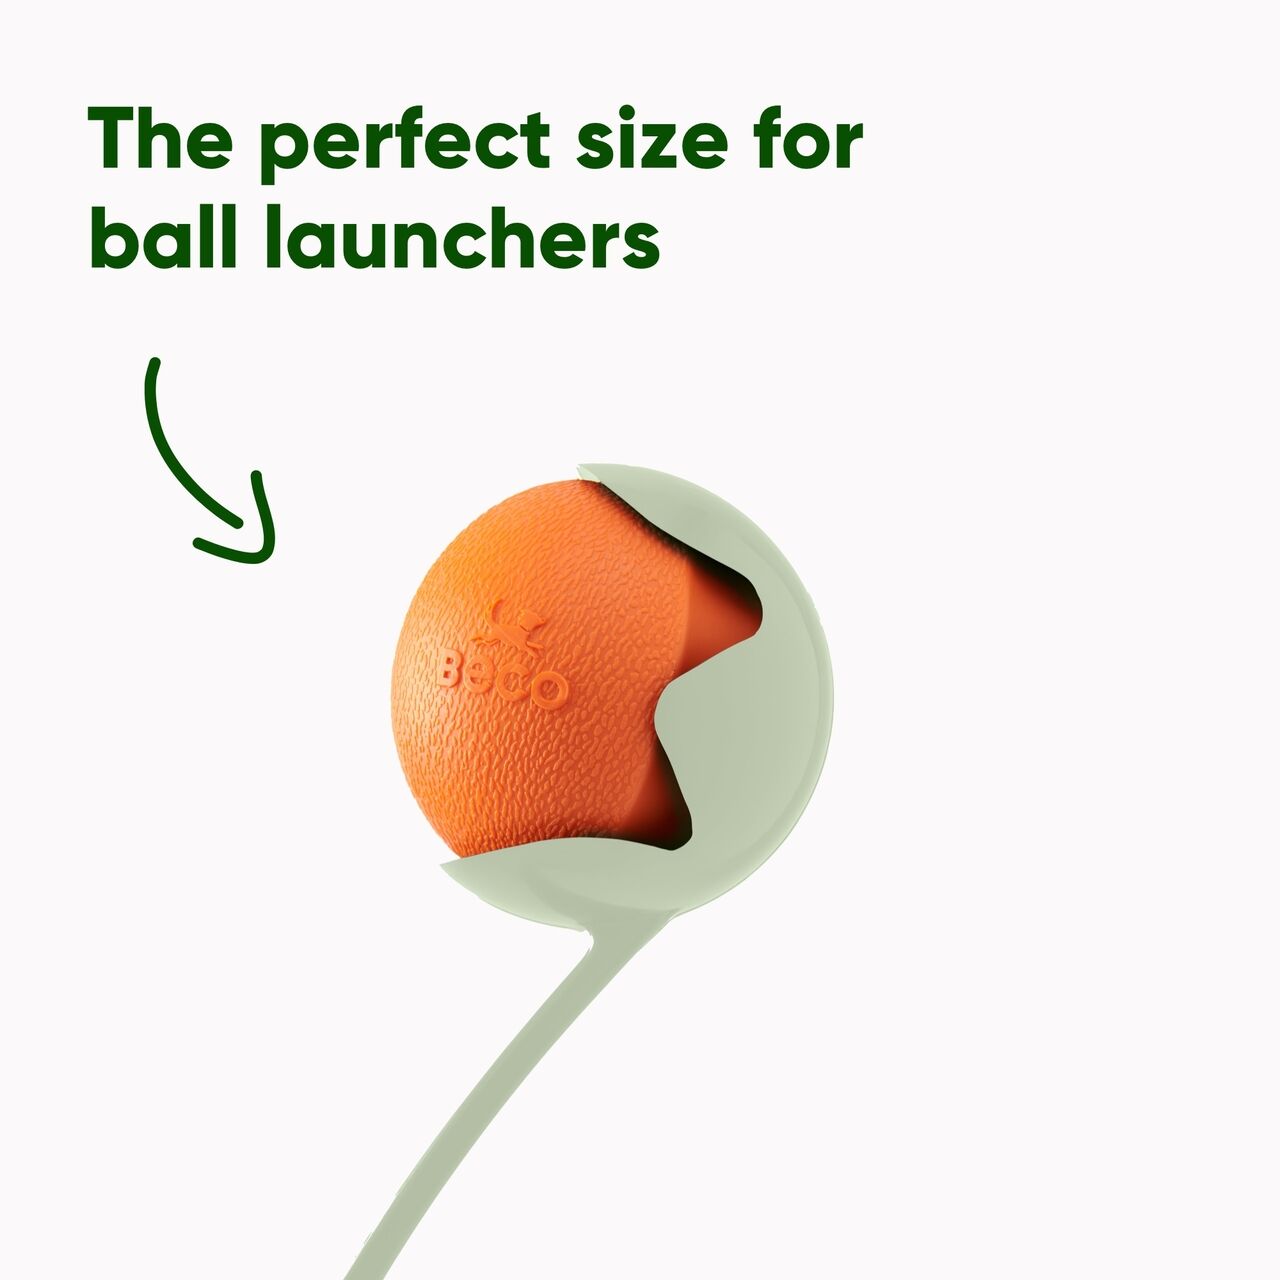 Beco-Fetch-Ball-Natur-Kautschuk-orange-perfekte-Groesse-fuer-Ballschleuder-BT-75628